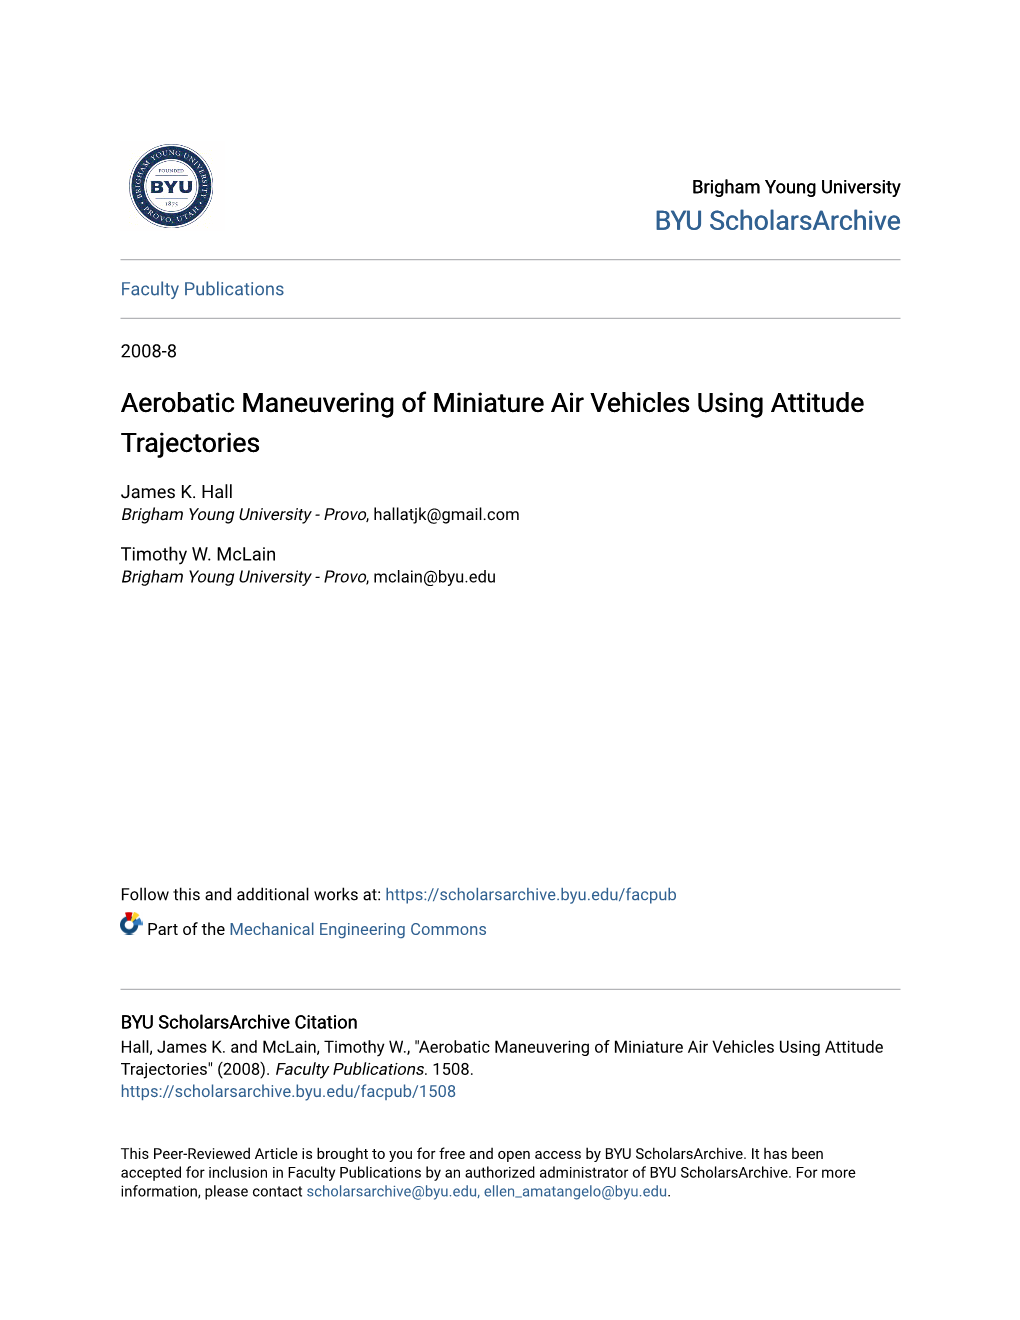 Aerobatic Maneuvering of Miniature Air Vehicles Using Attitude Trajectories